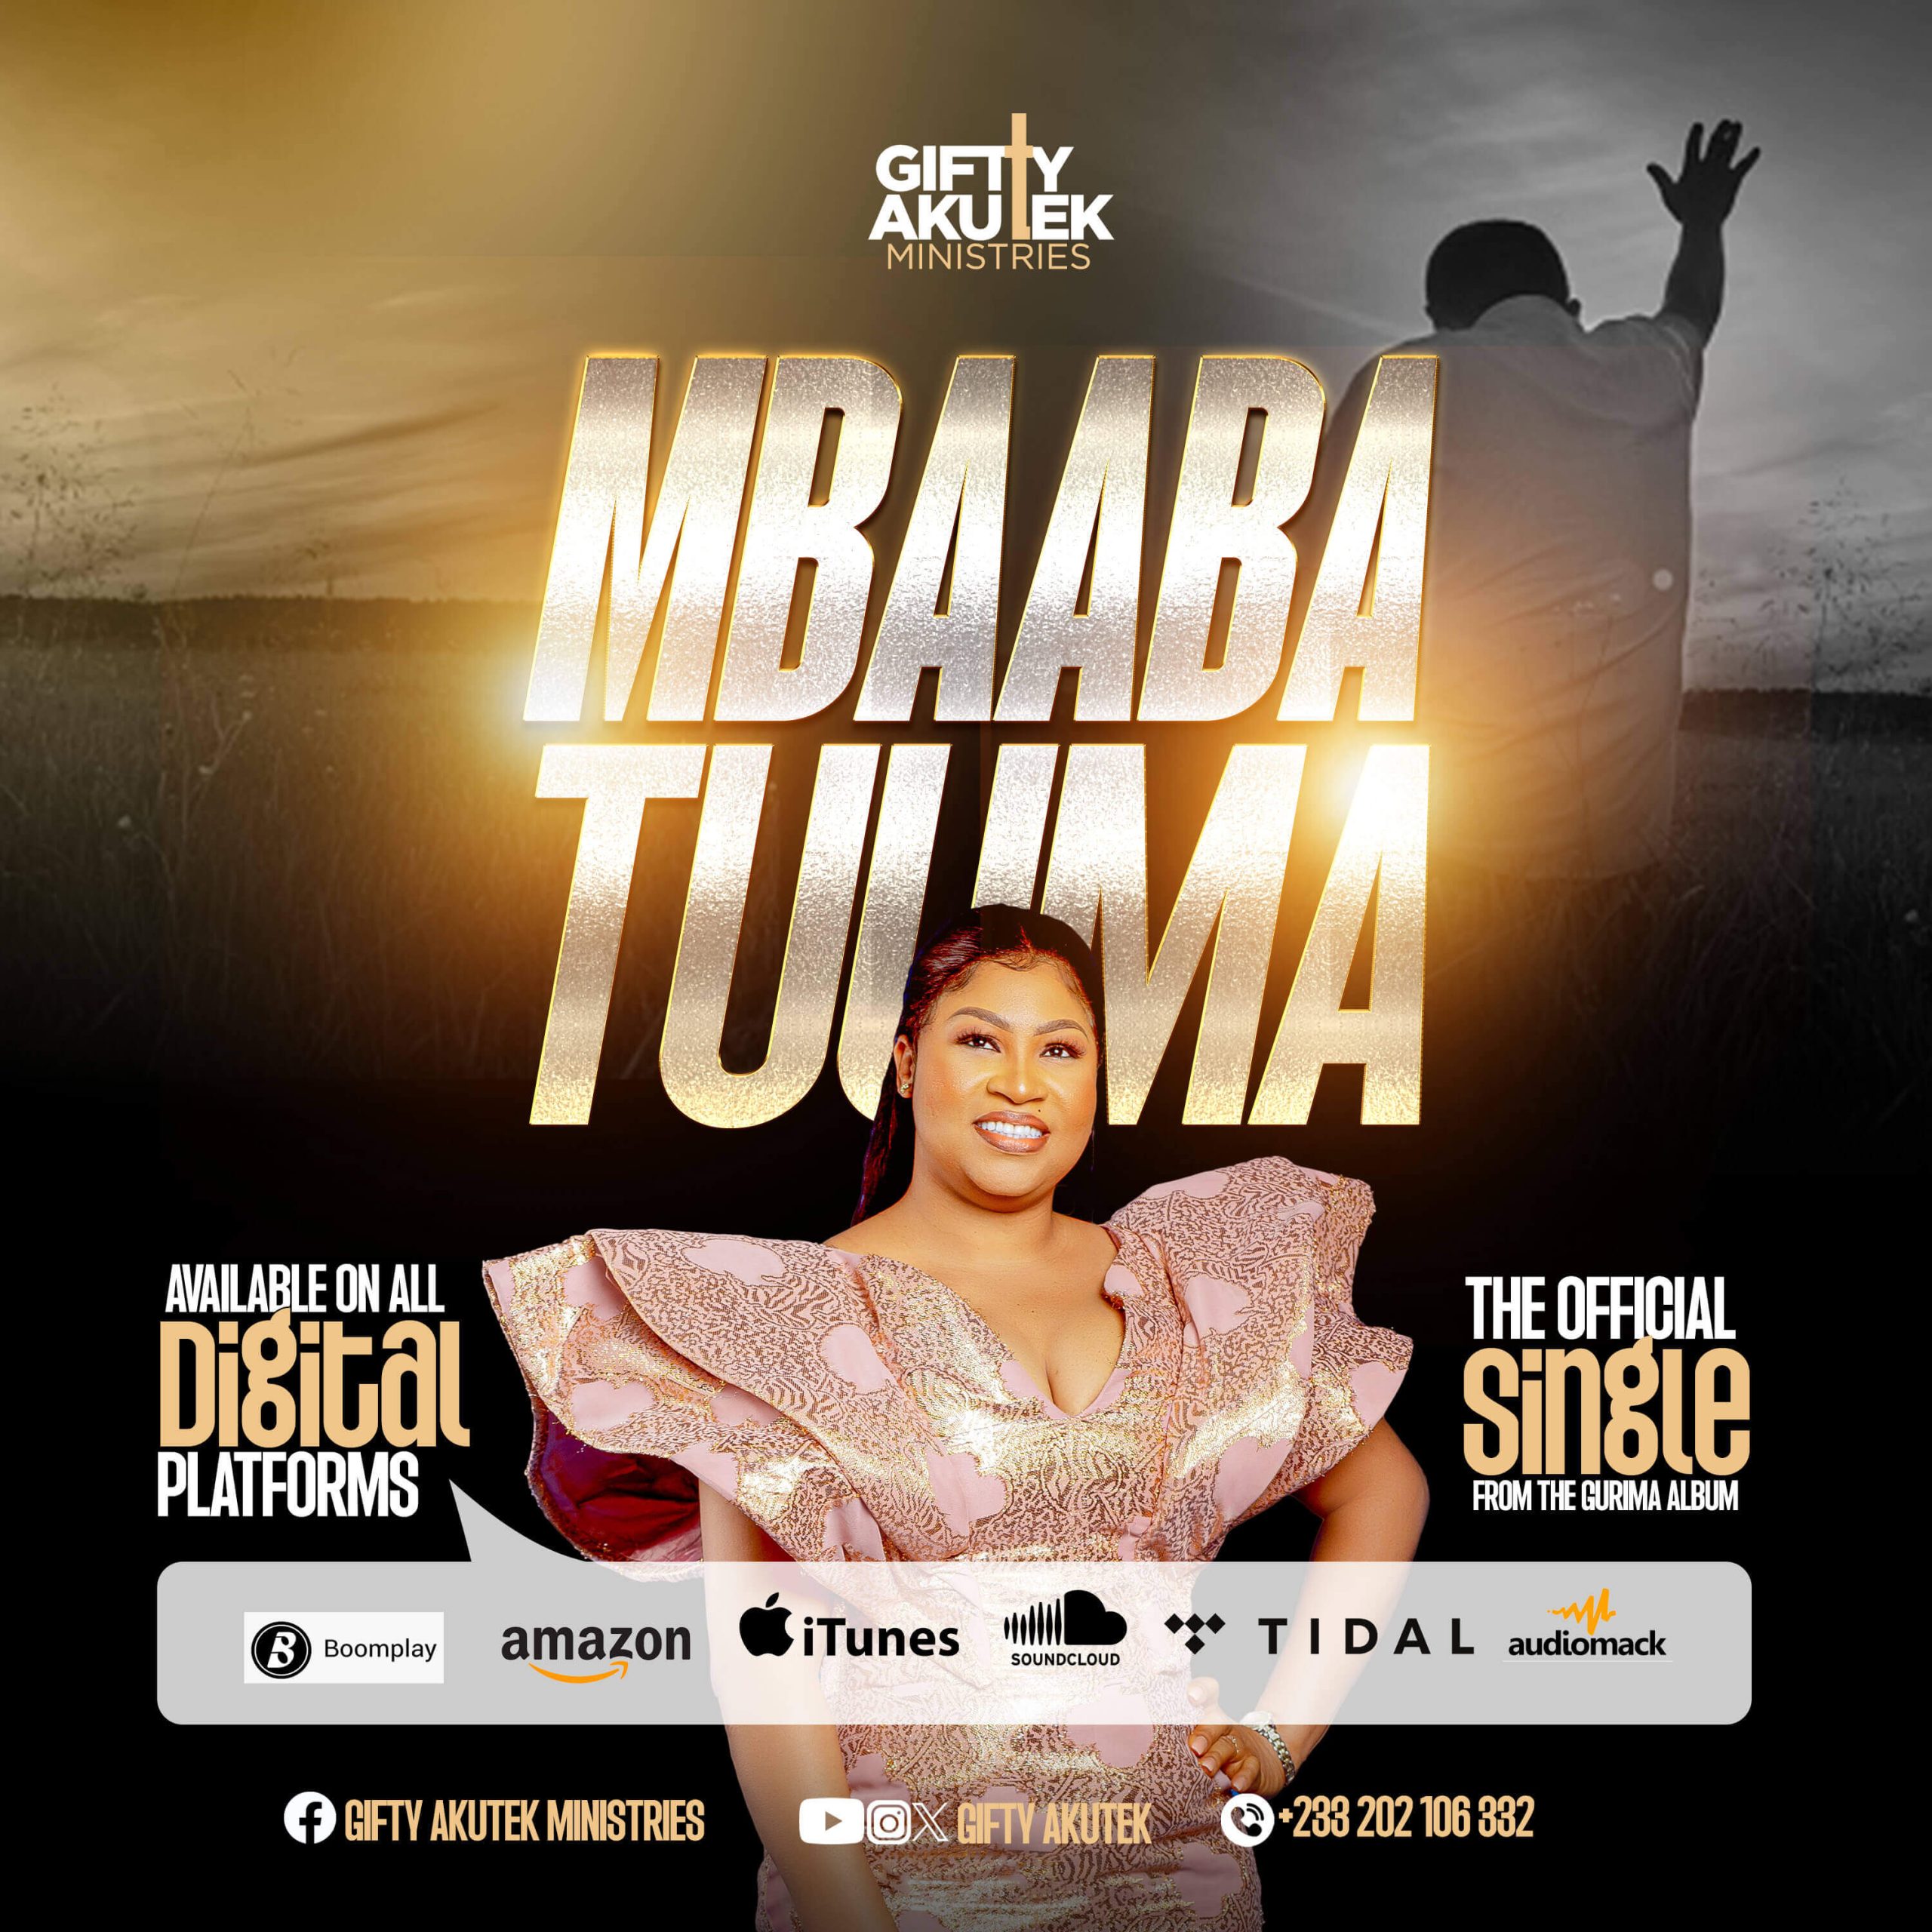 ''MBAABA TUMAA'' is Gospel Artiste Gifty Akutek Latest Single off her Gurimam Album